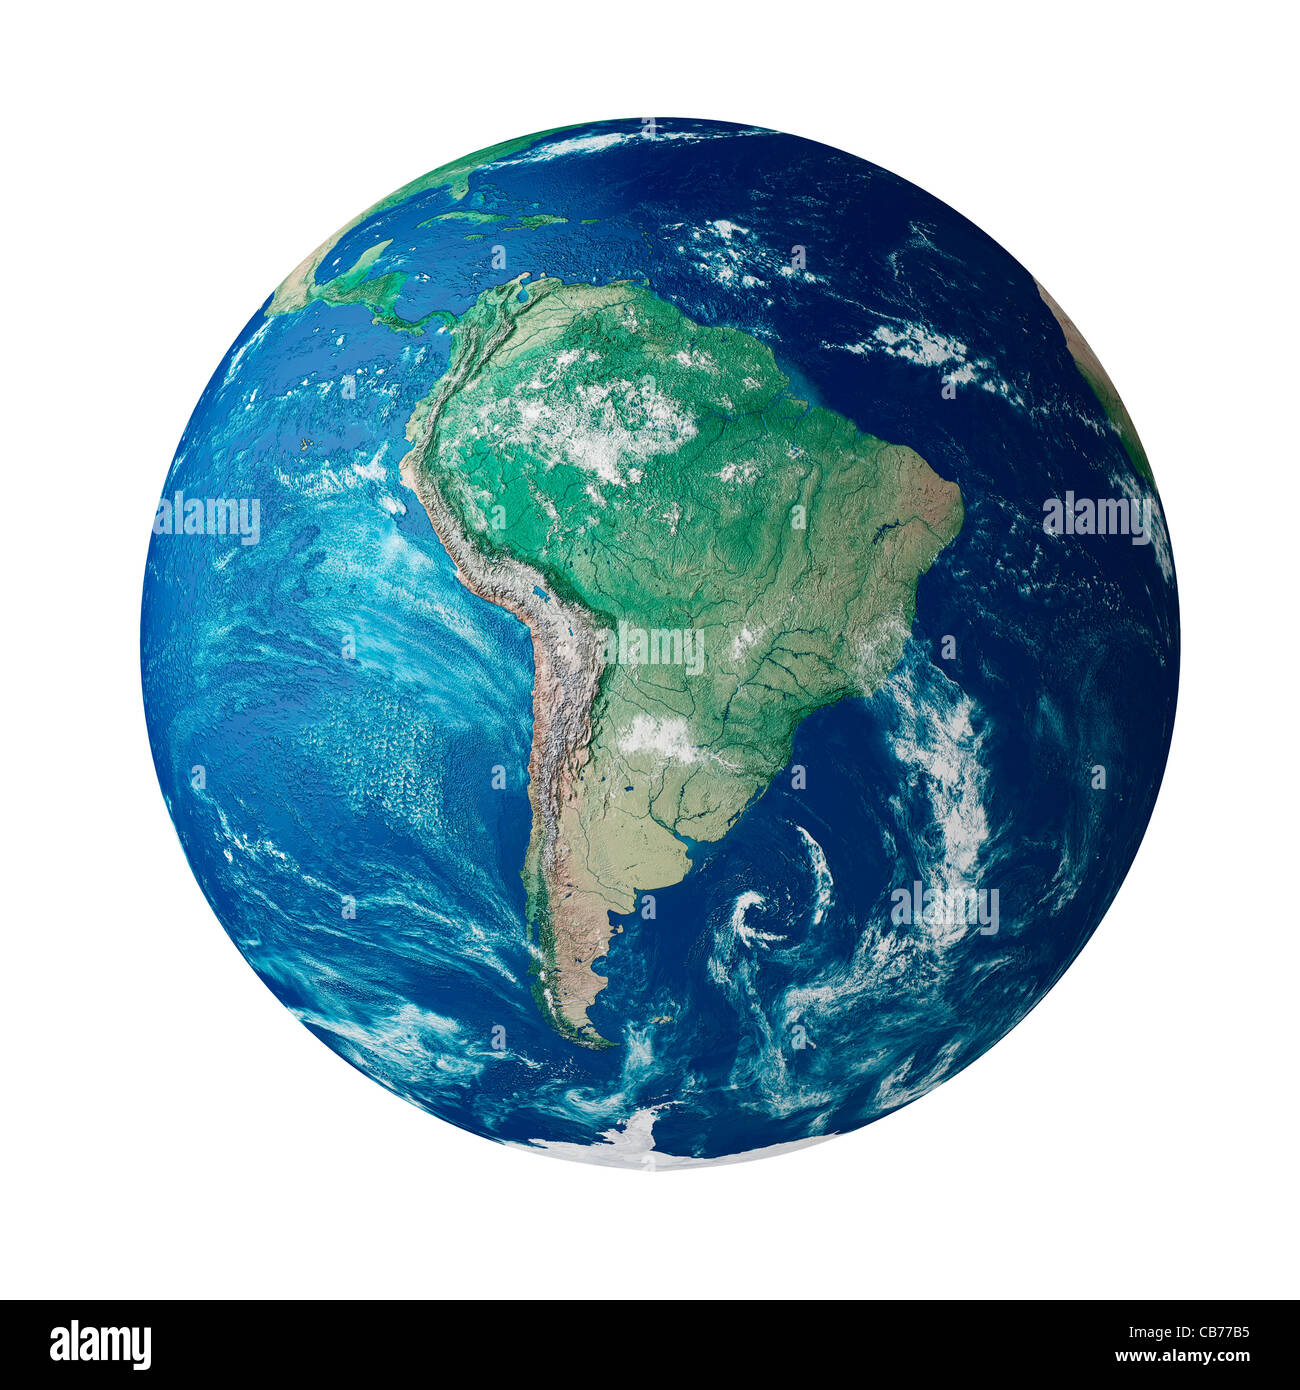 Globus mit den südamerikanischen Kontinent auf dem Planeten Erde Stockfoto